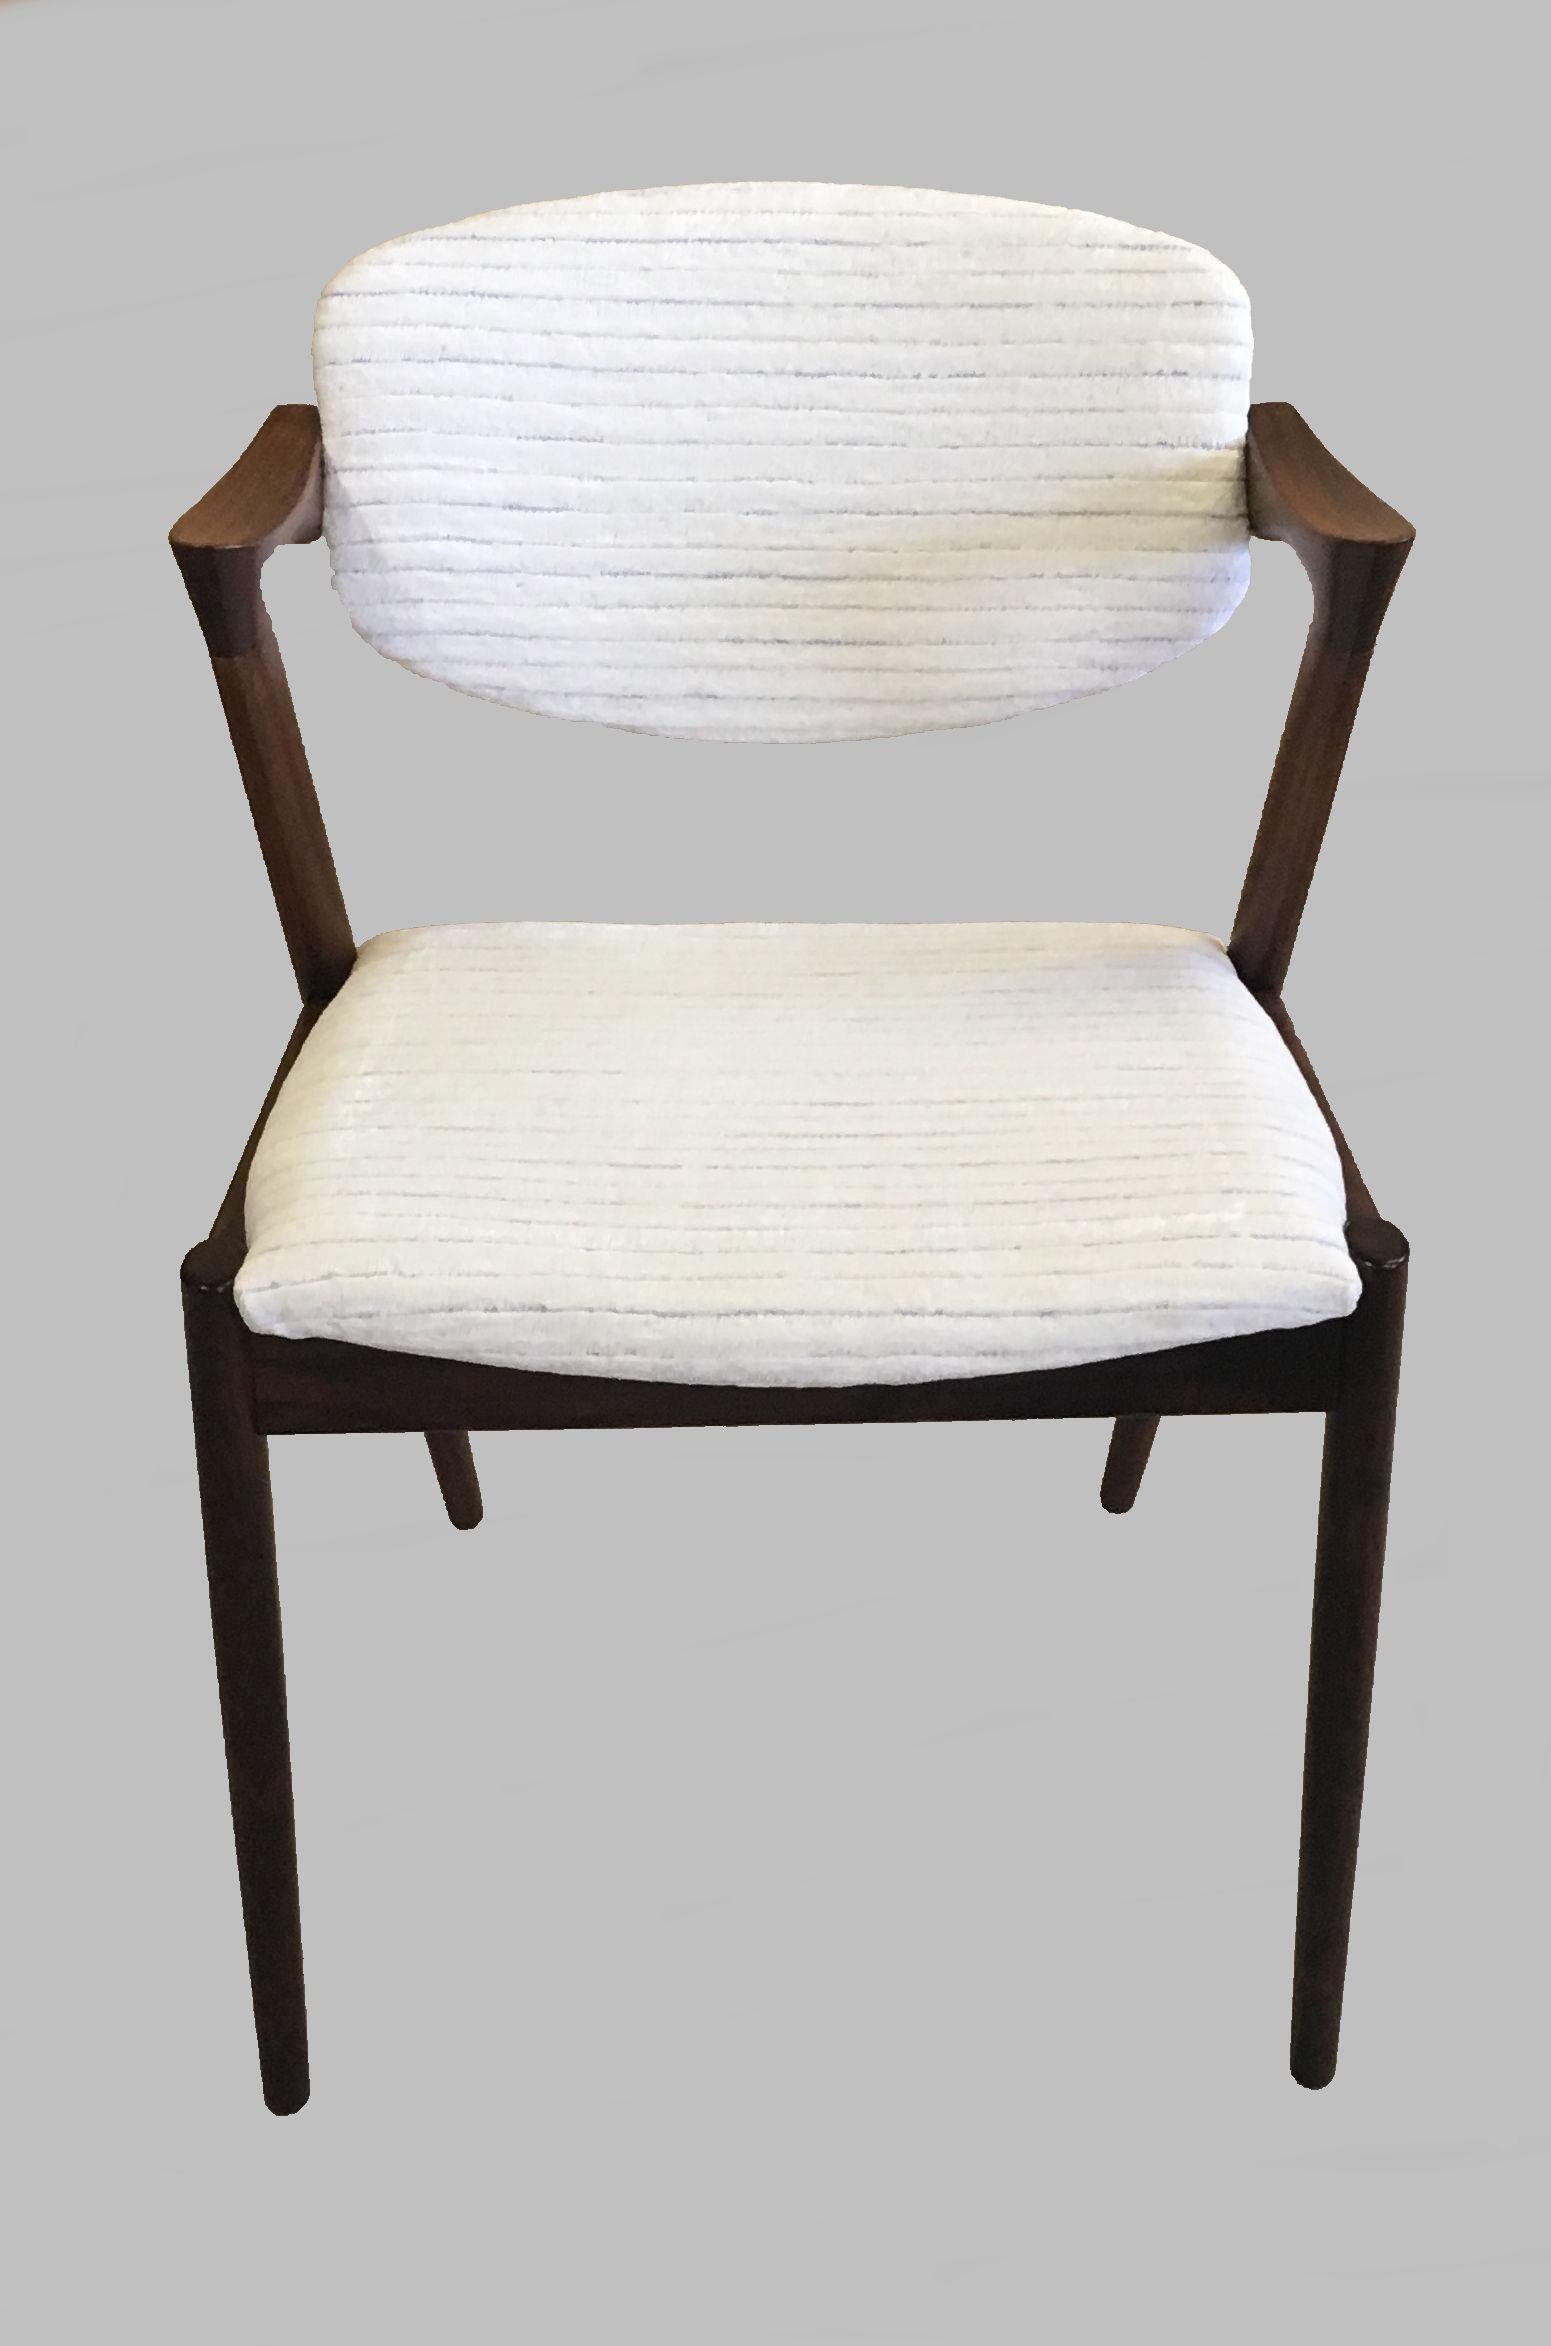 Ensemble de quatre chaises de salle à manger en palissandre des années 1960, entièrement restaurées, avec dossier réglable, par Kai Kristiansen pour Schous Møbelfabrik.

Les chaises ont été restaurées et remises à neuf par notre atelier expérimenté